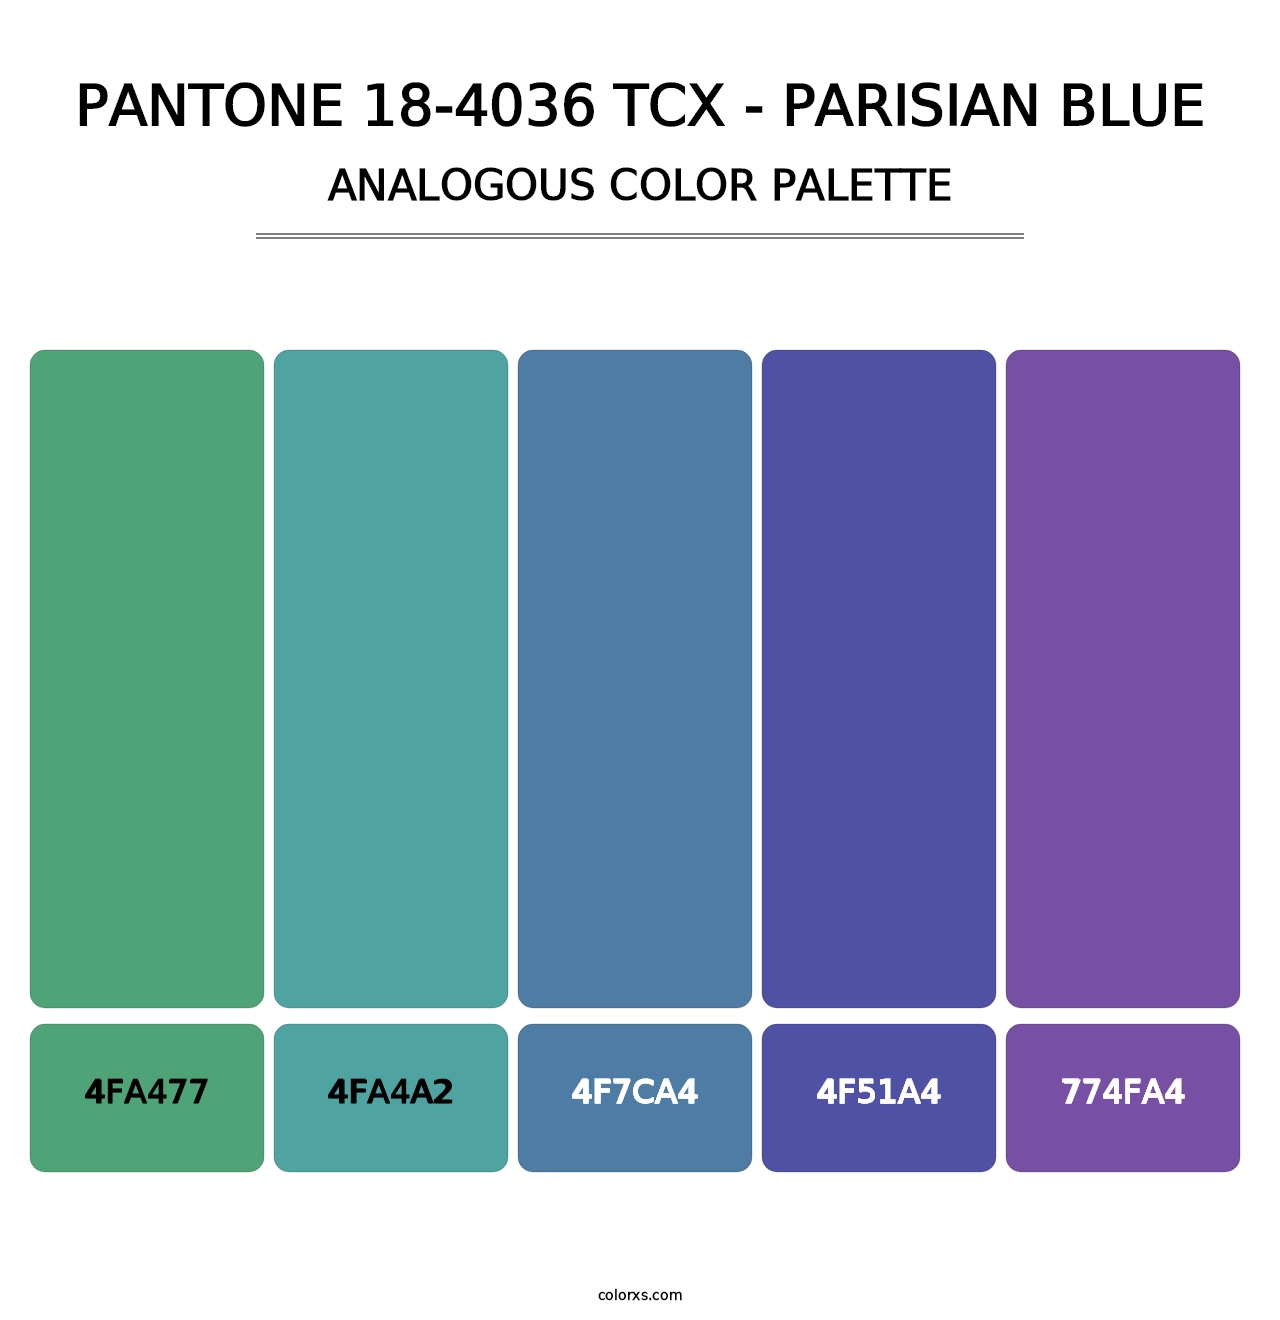 PANTONE 18-4036 TCX - Parisian Blue - Analogous Color Palette